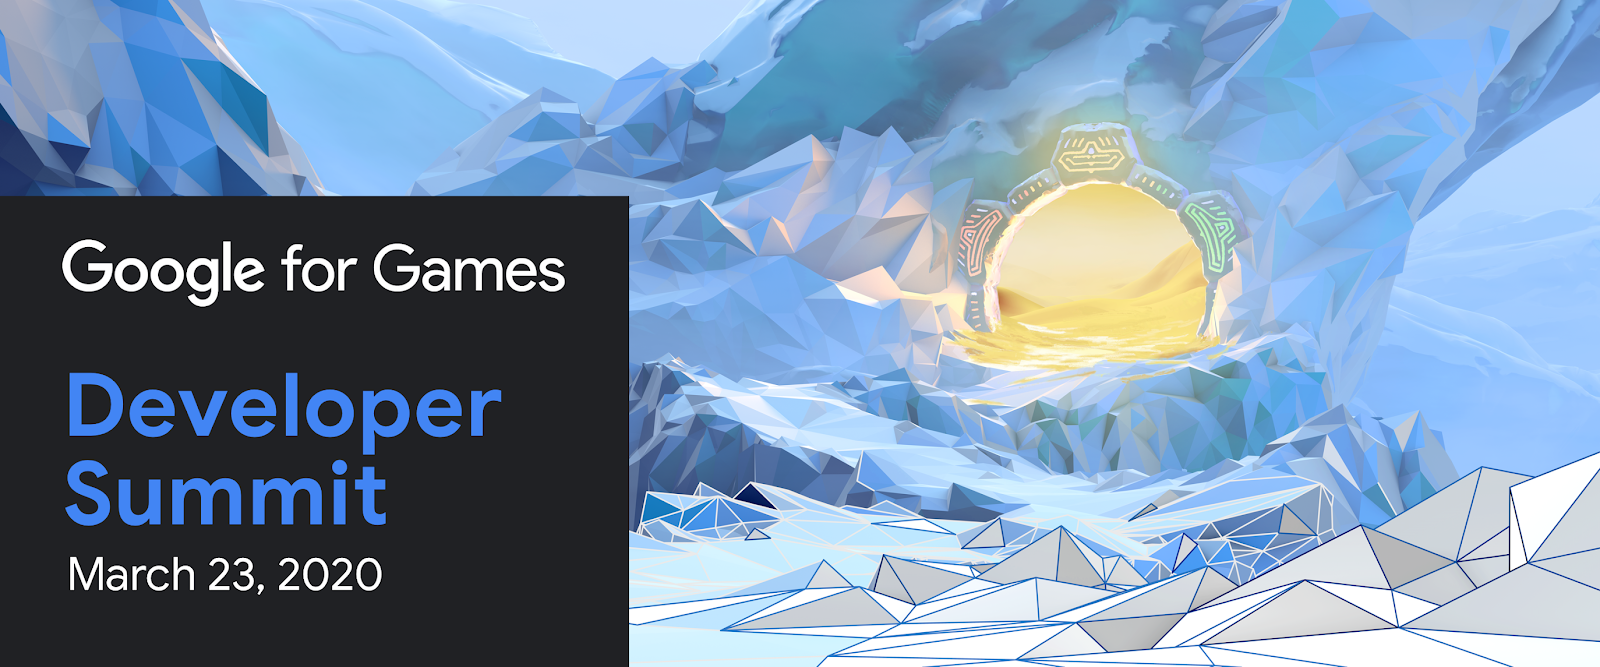 Google for Games Developer Summit banner. Video game background illustration